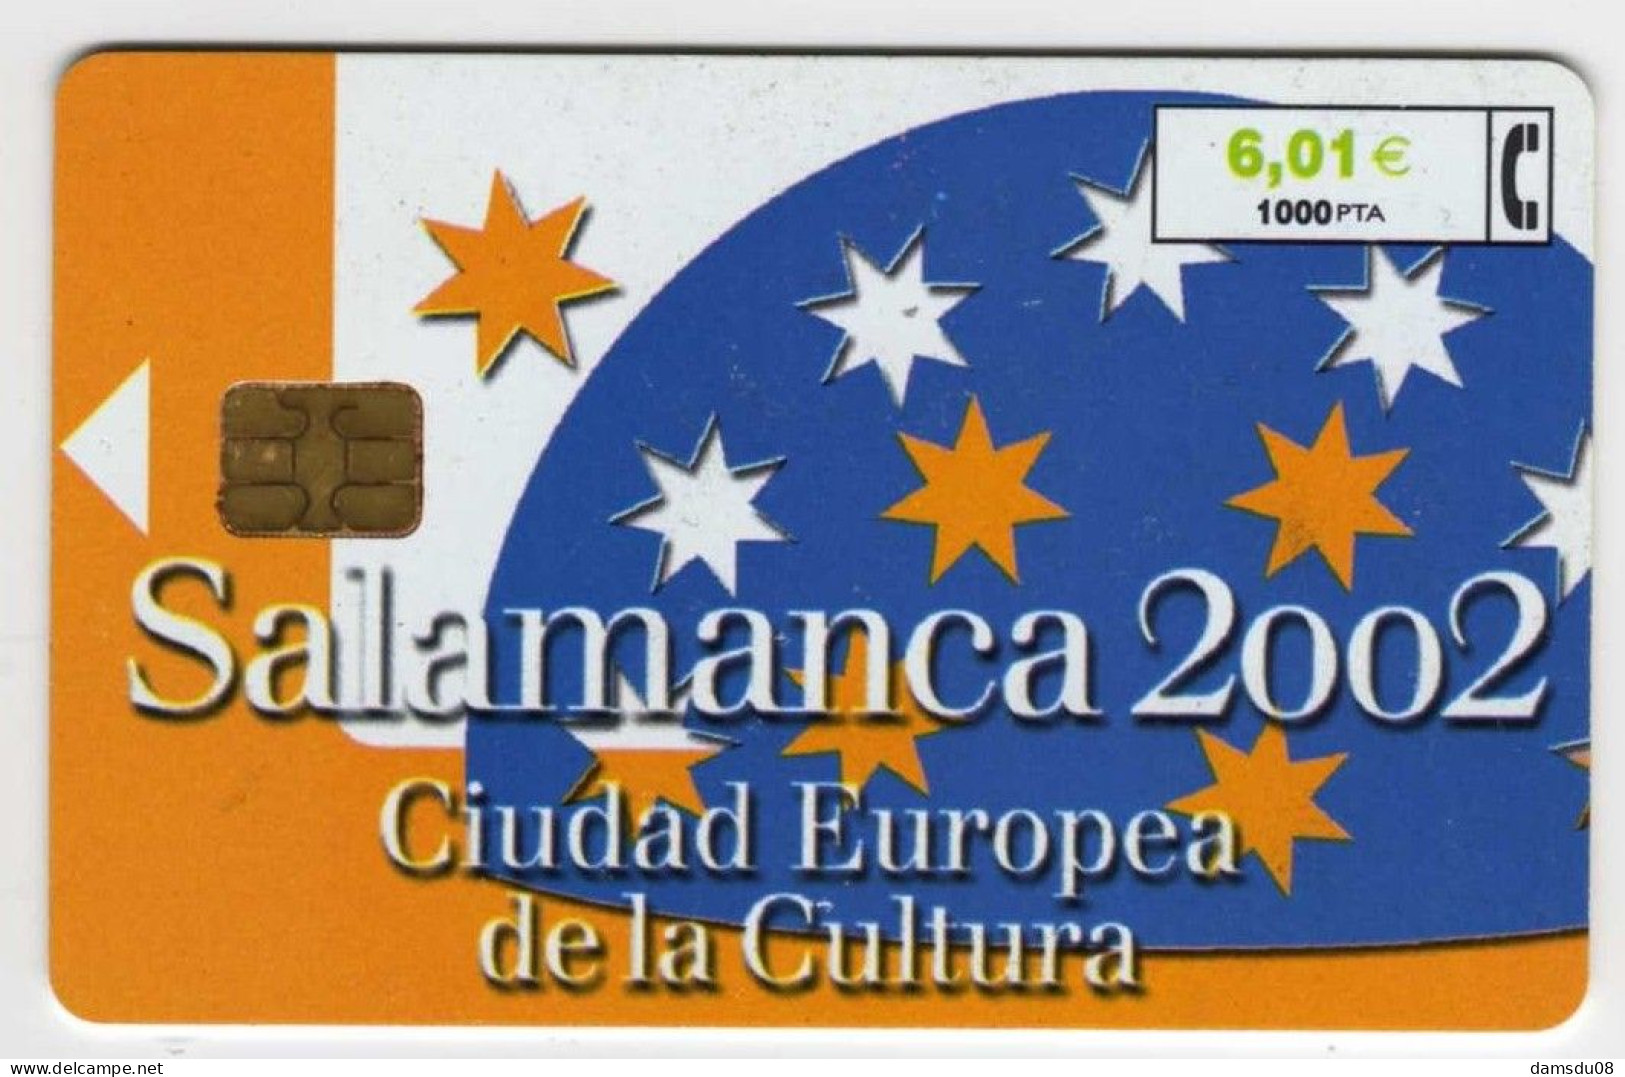 Espagne Salamanca 2002  1000 PTA 06/01 501.500 Exemplaires Vide - Basisuitgaven